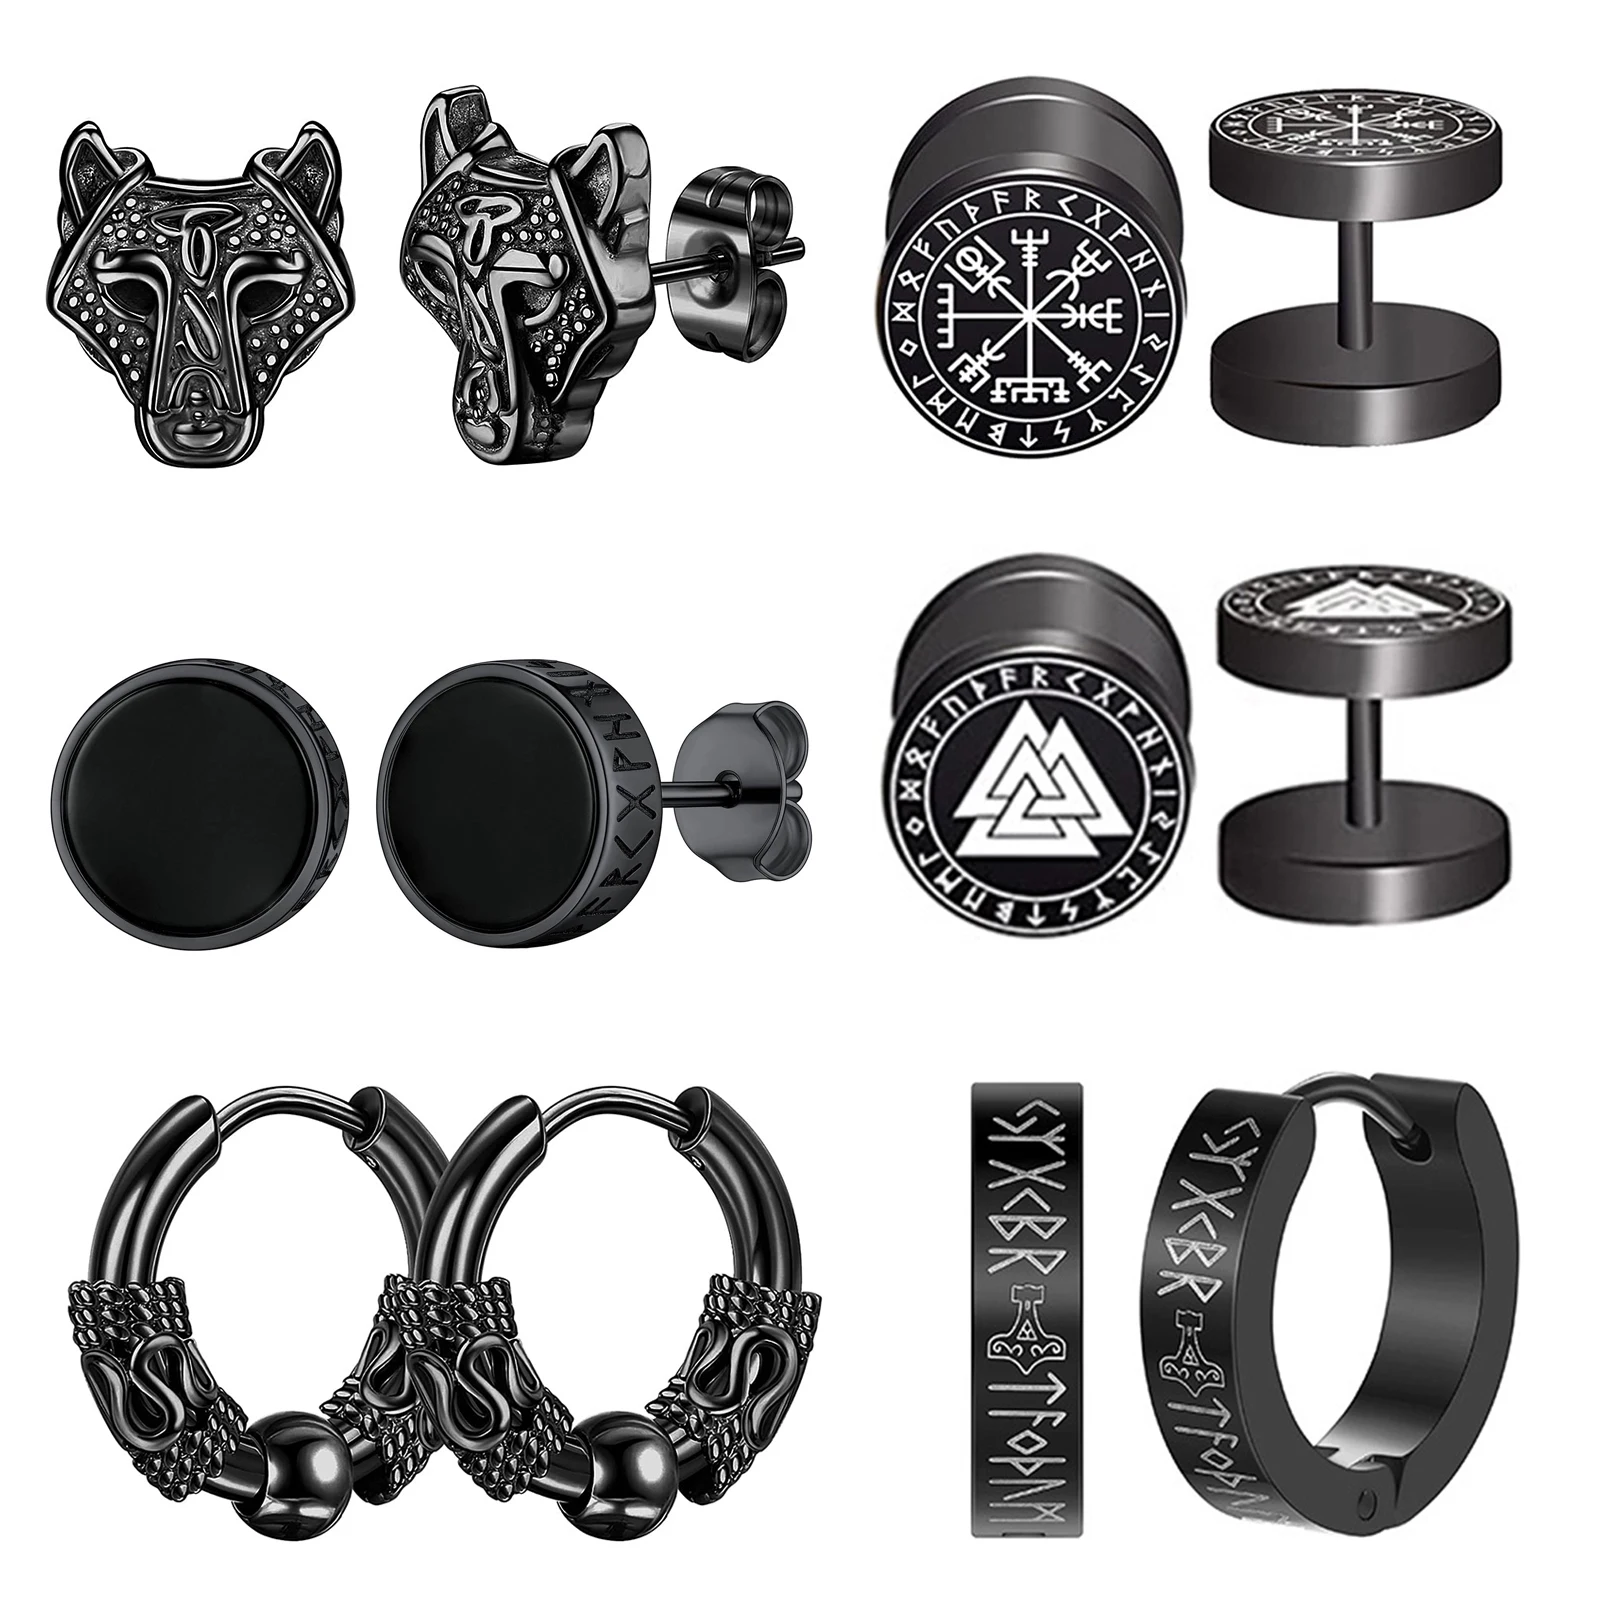 

Boniskiss 6 Pairs Norse Viking Runes Hoop Earrings Stainless Steel Black Fake Plugs for Boys Men Women Piercing Ear Stud Jewelry